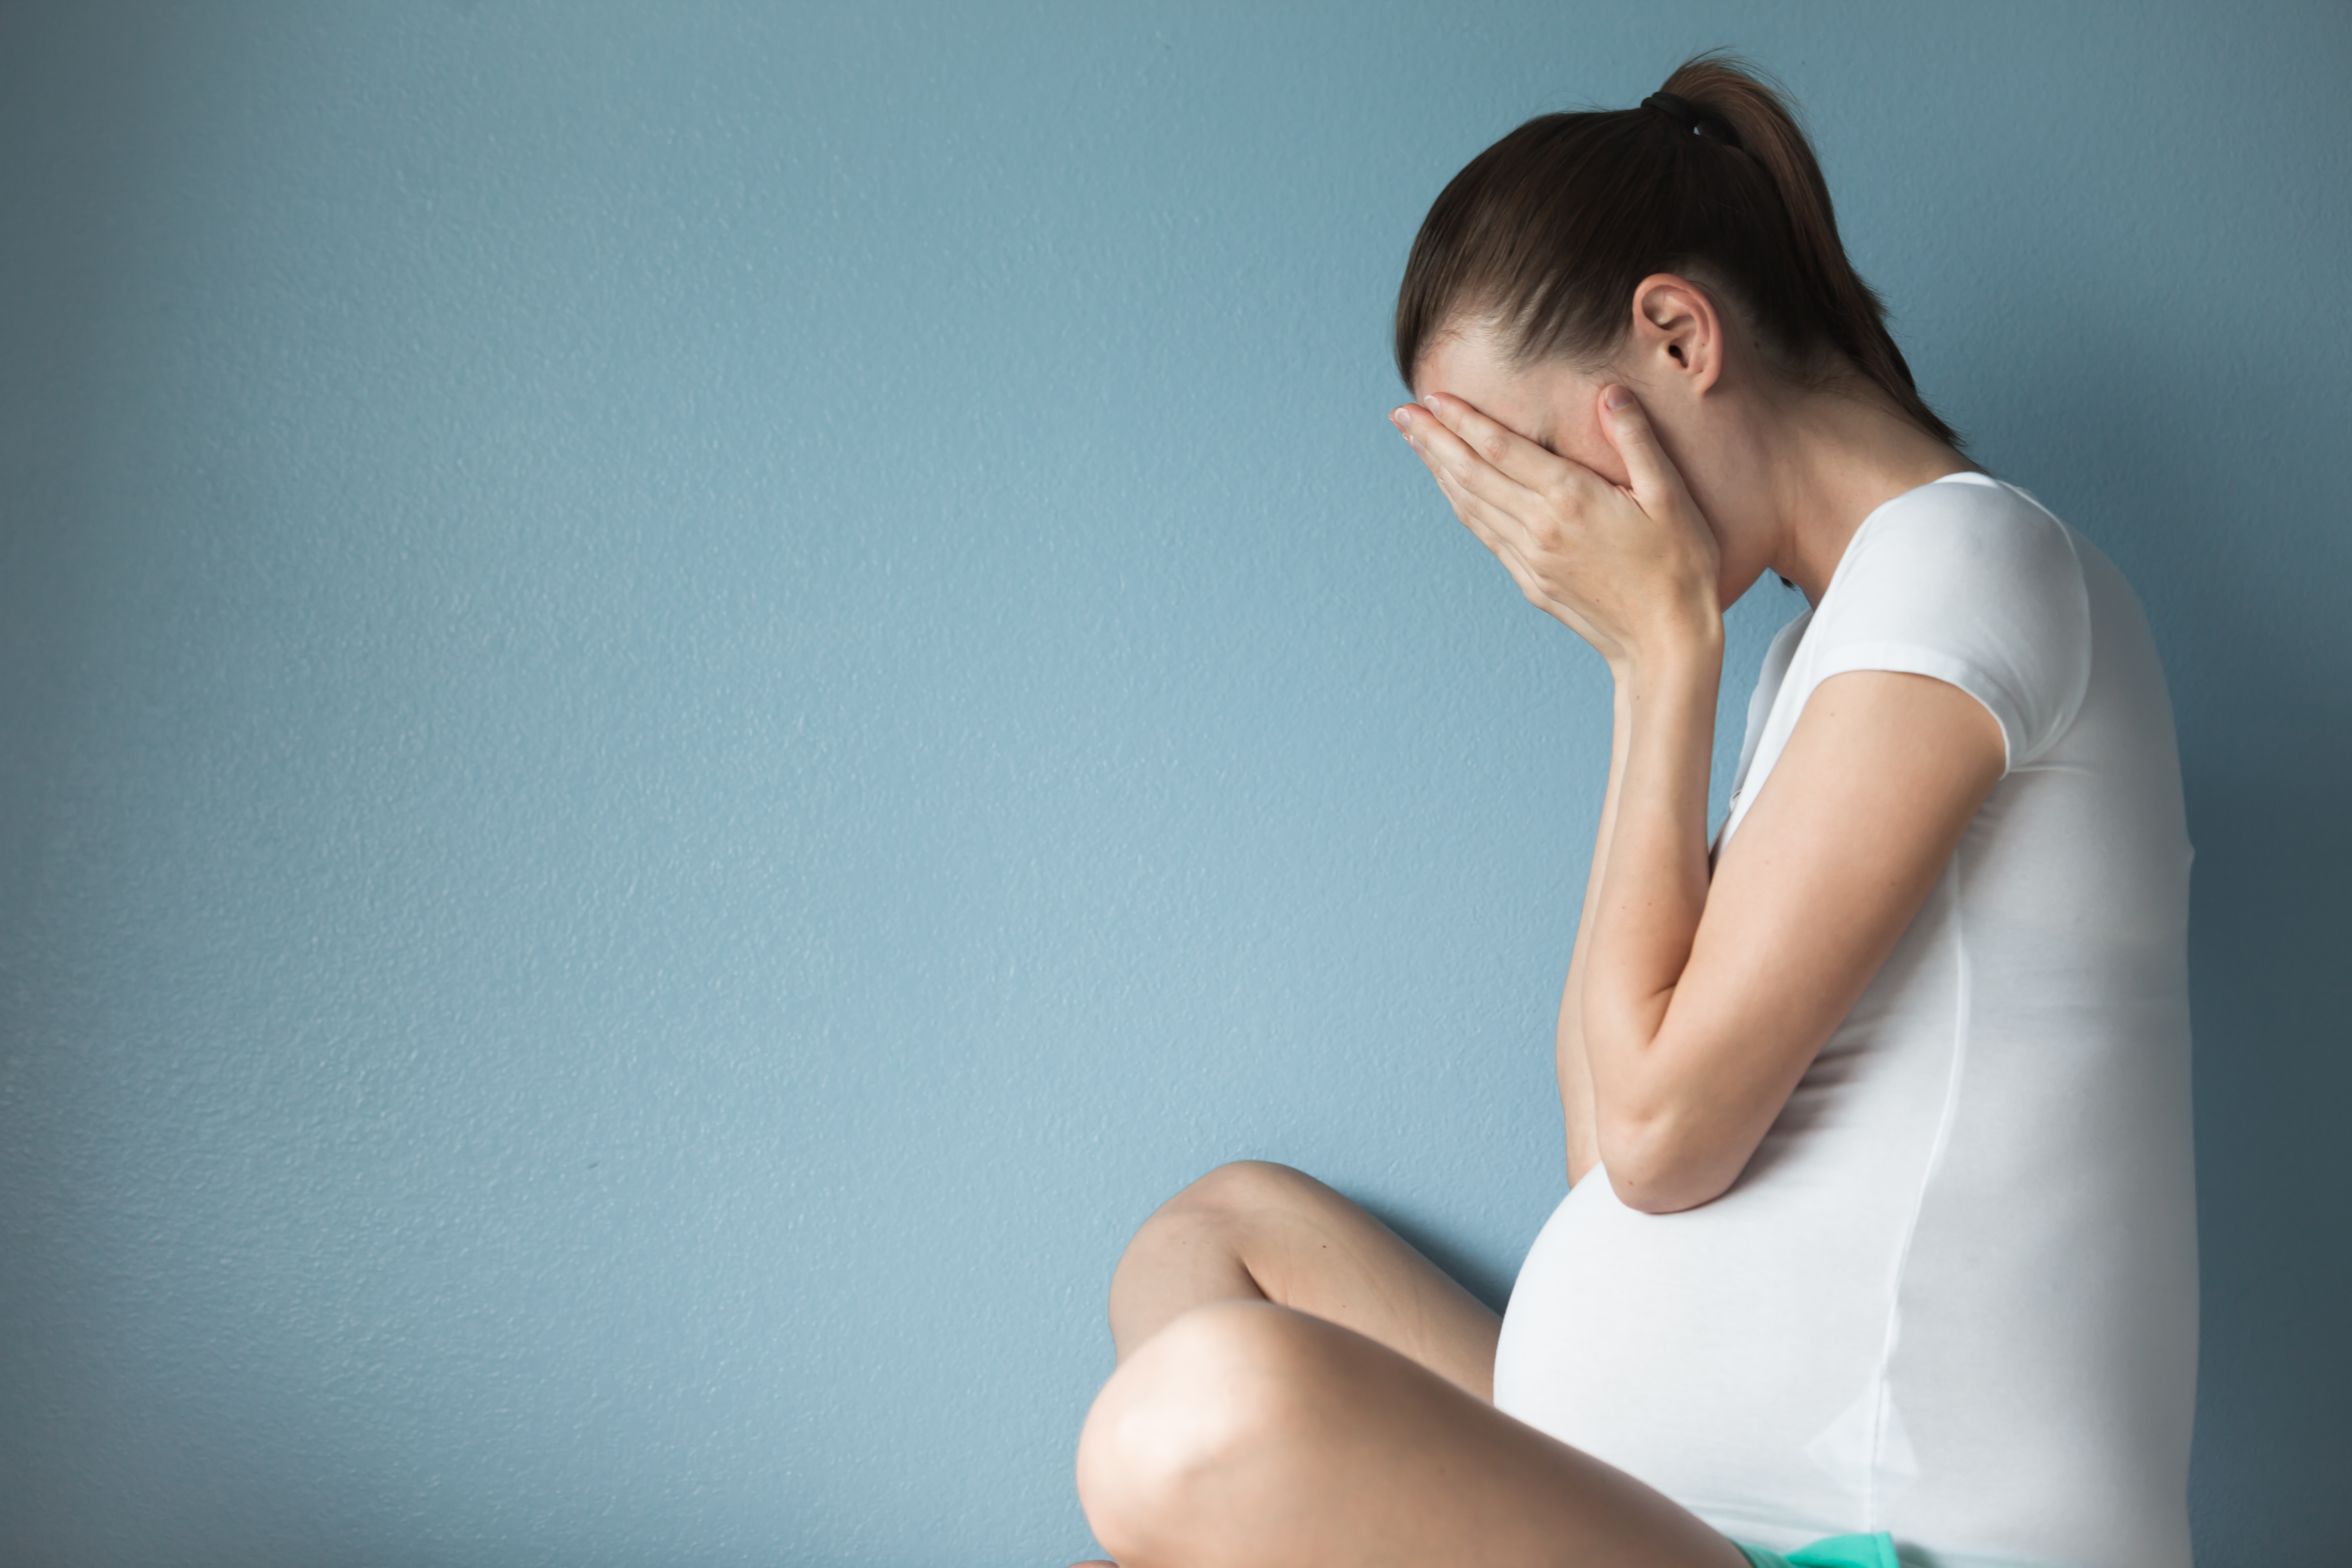 Una embarazada disgustada sujetándose el vientre | Fuente: Shutterstock